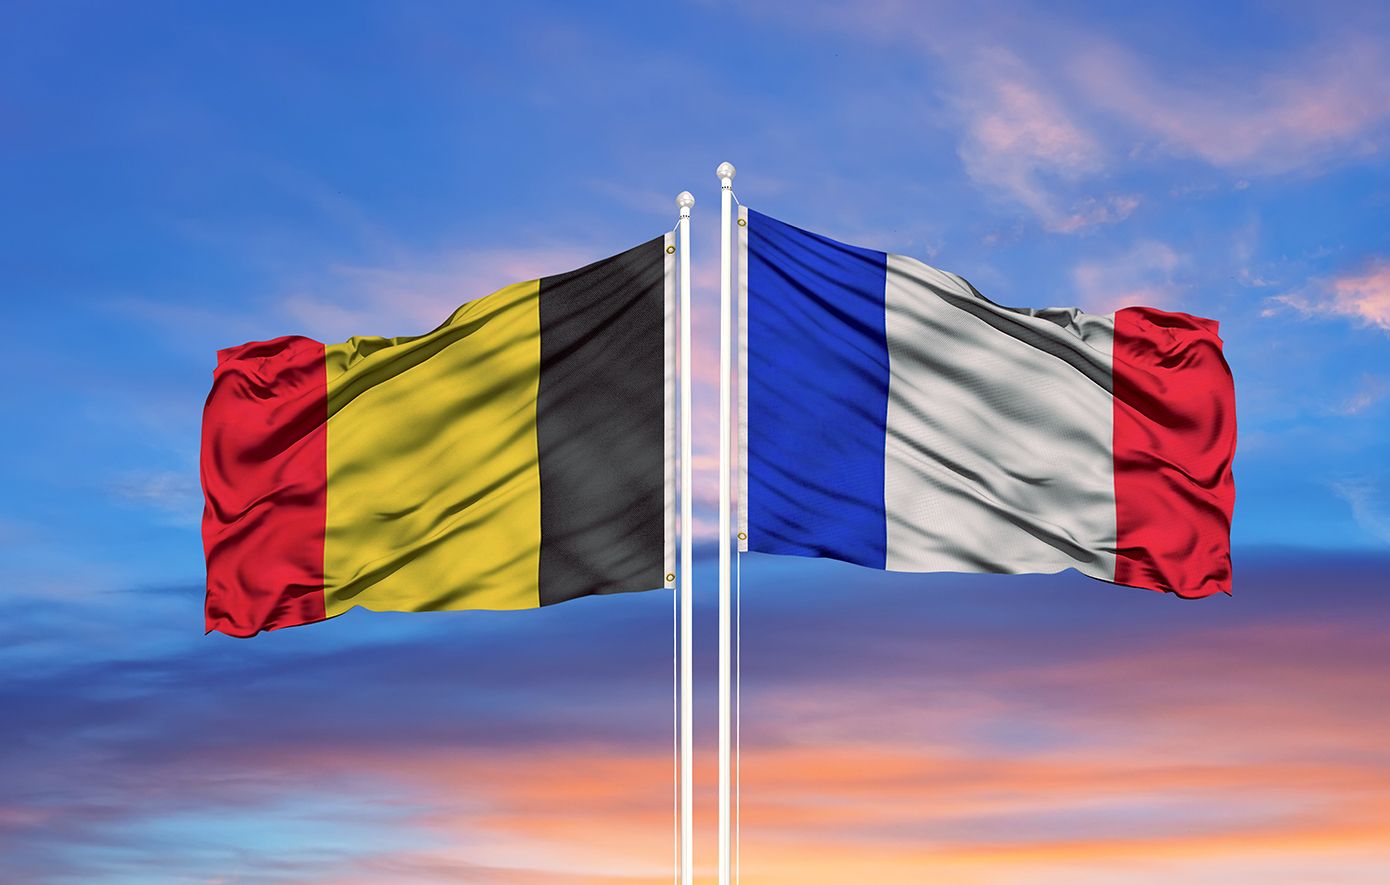 Μνημόνιο συνεργασίας για την ενίσχυση της χερσαίας άμυνας υπέγραψαν Γαλλία και Βέλγιο